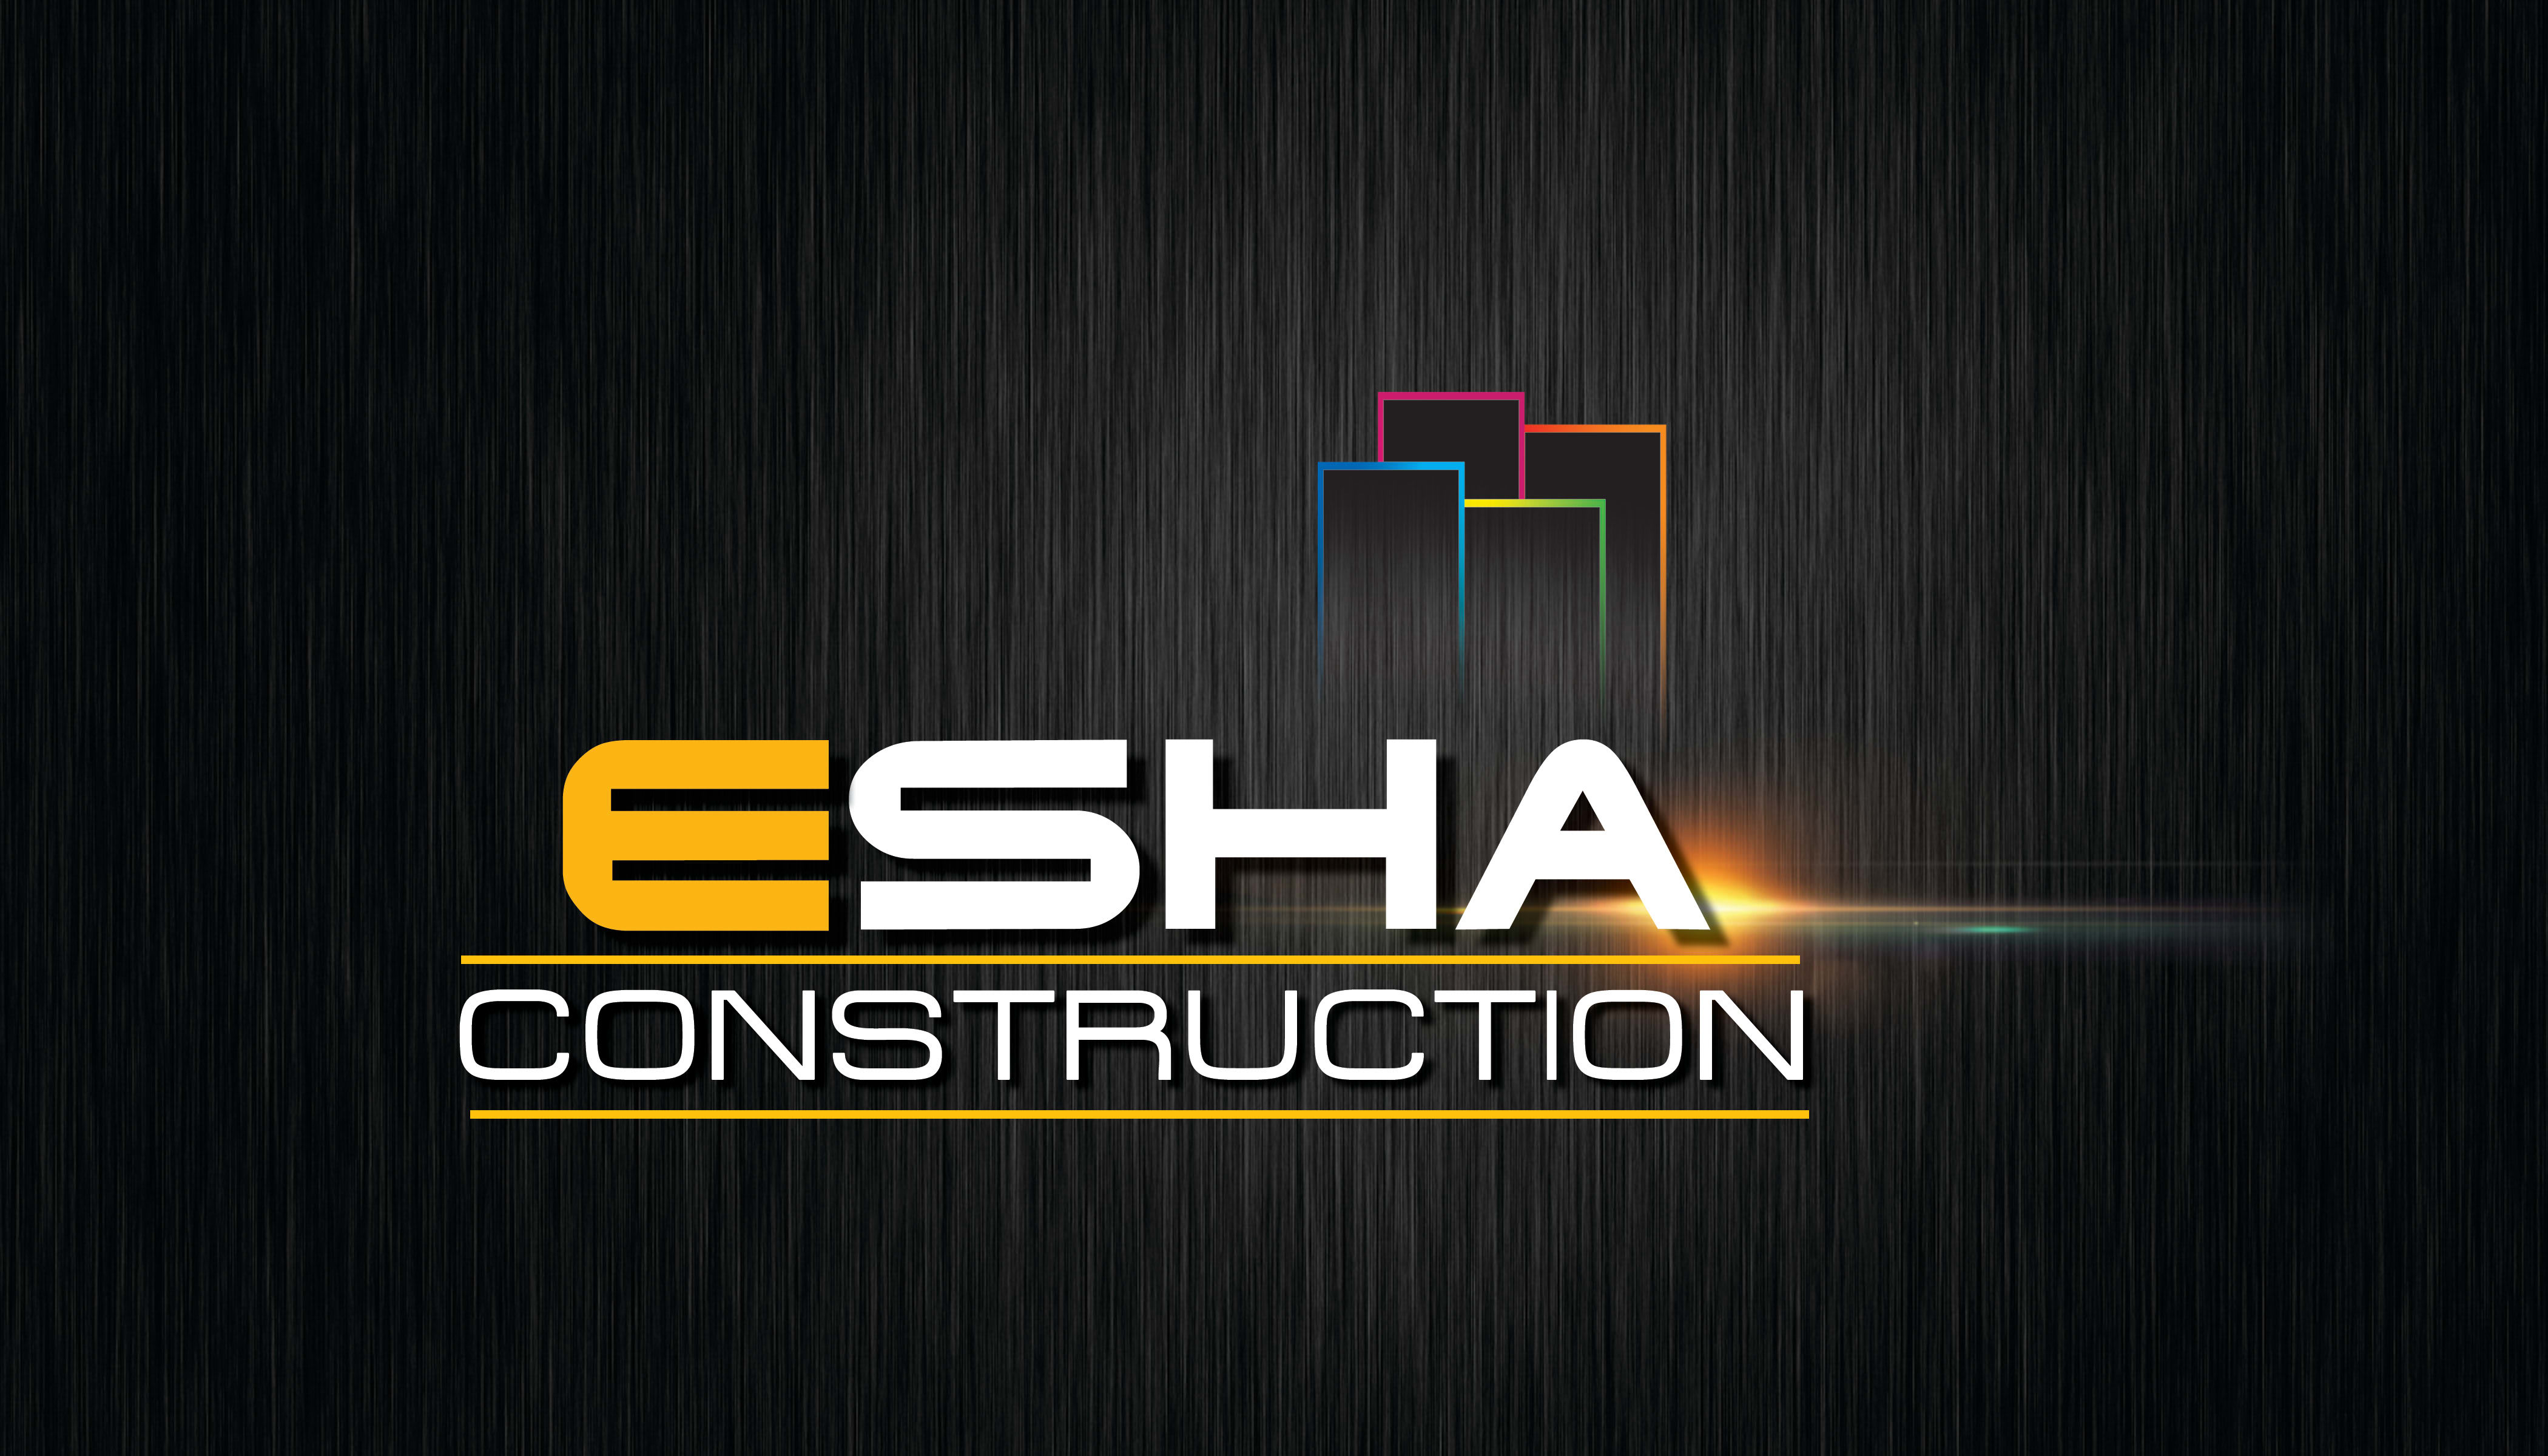 ESHA CONSTRUCTION